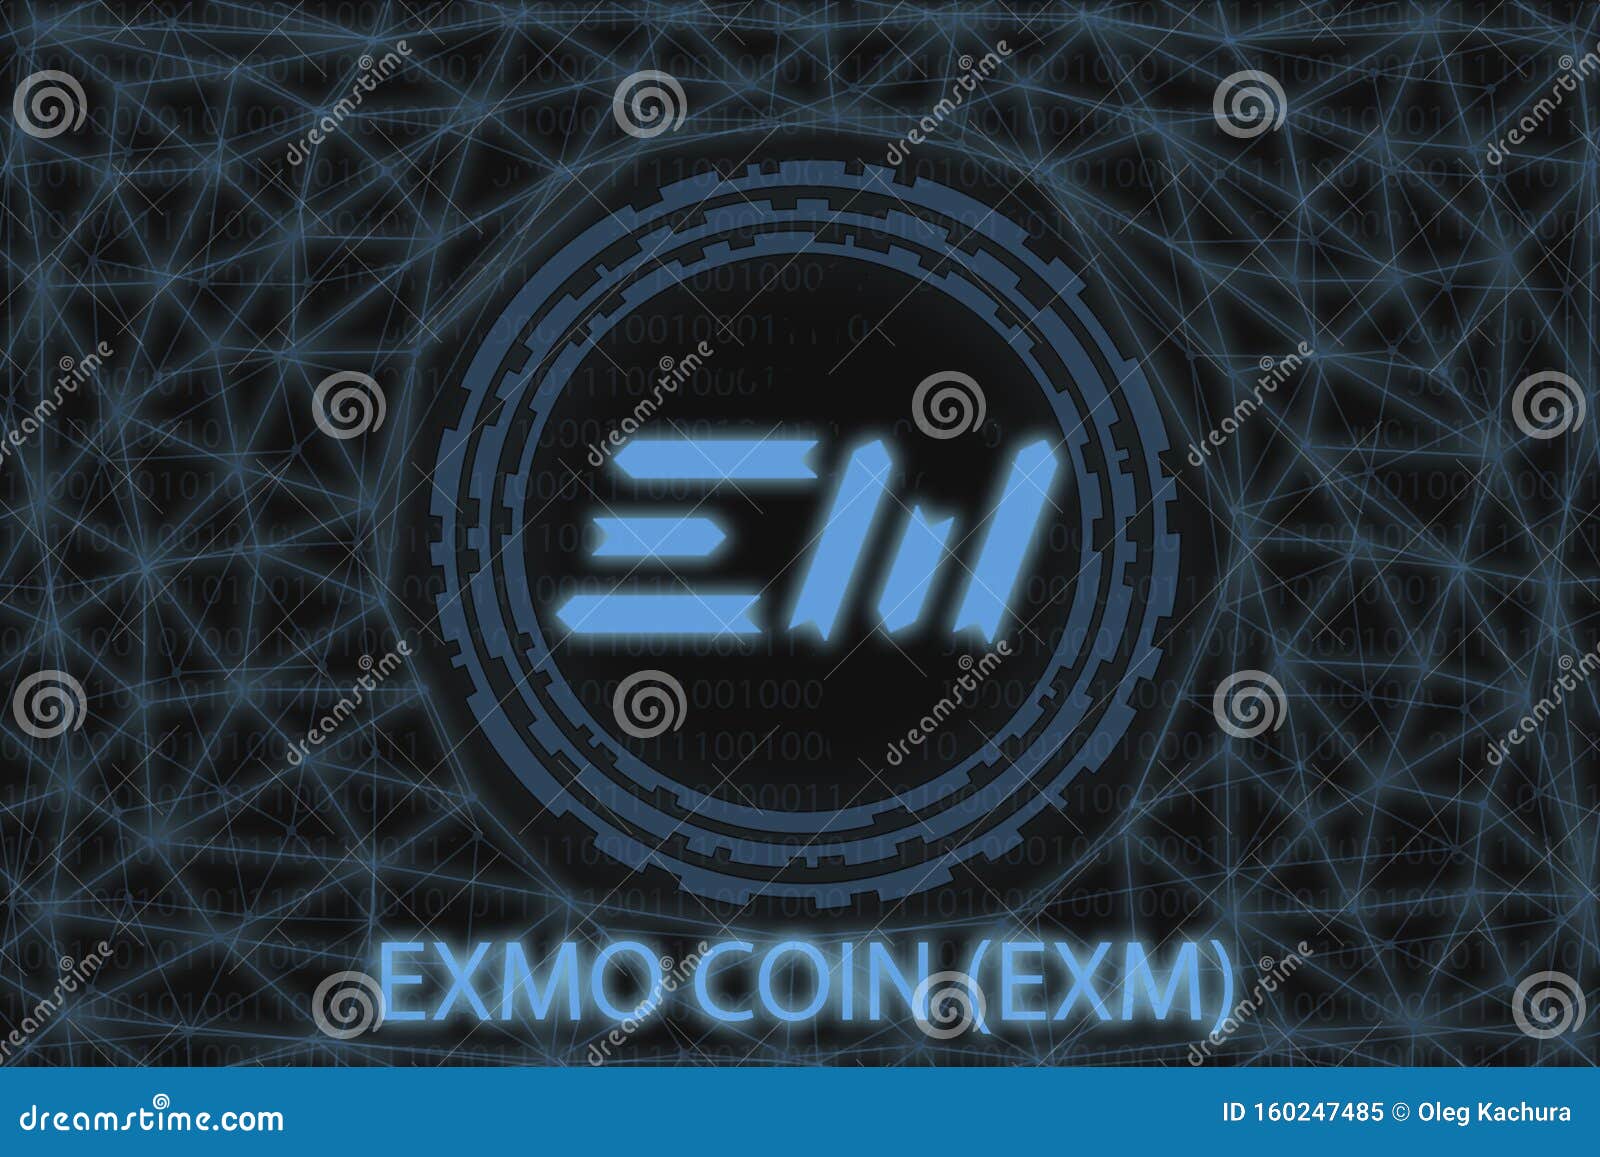 exmo coin